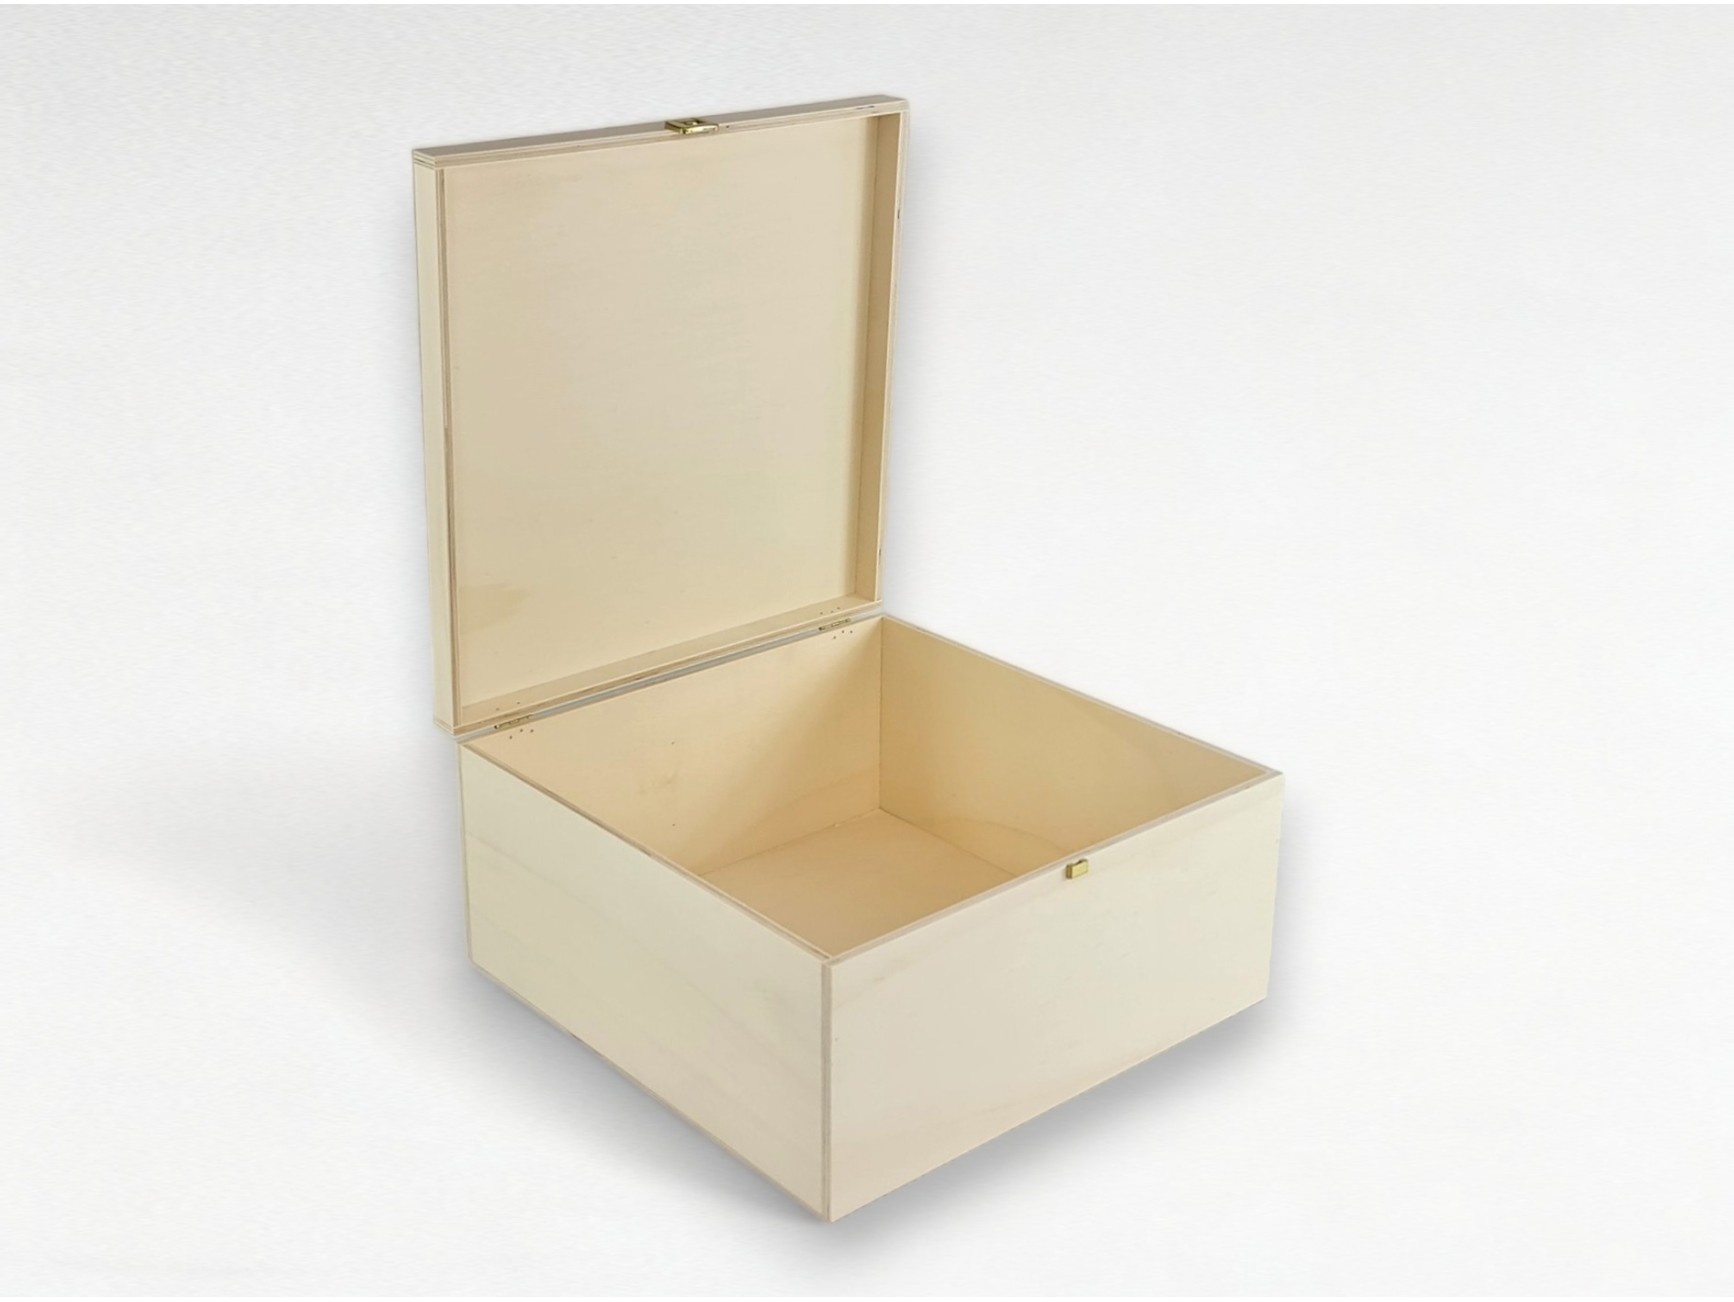  Caja de madera con tapa con bisagras, caja de